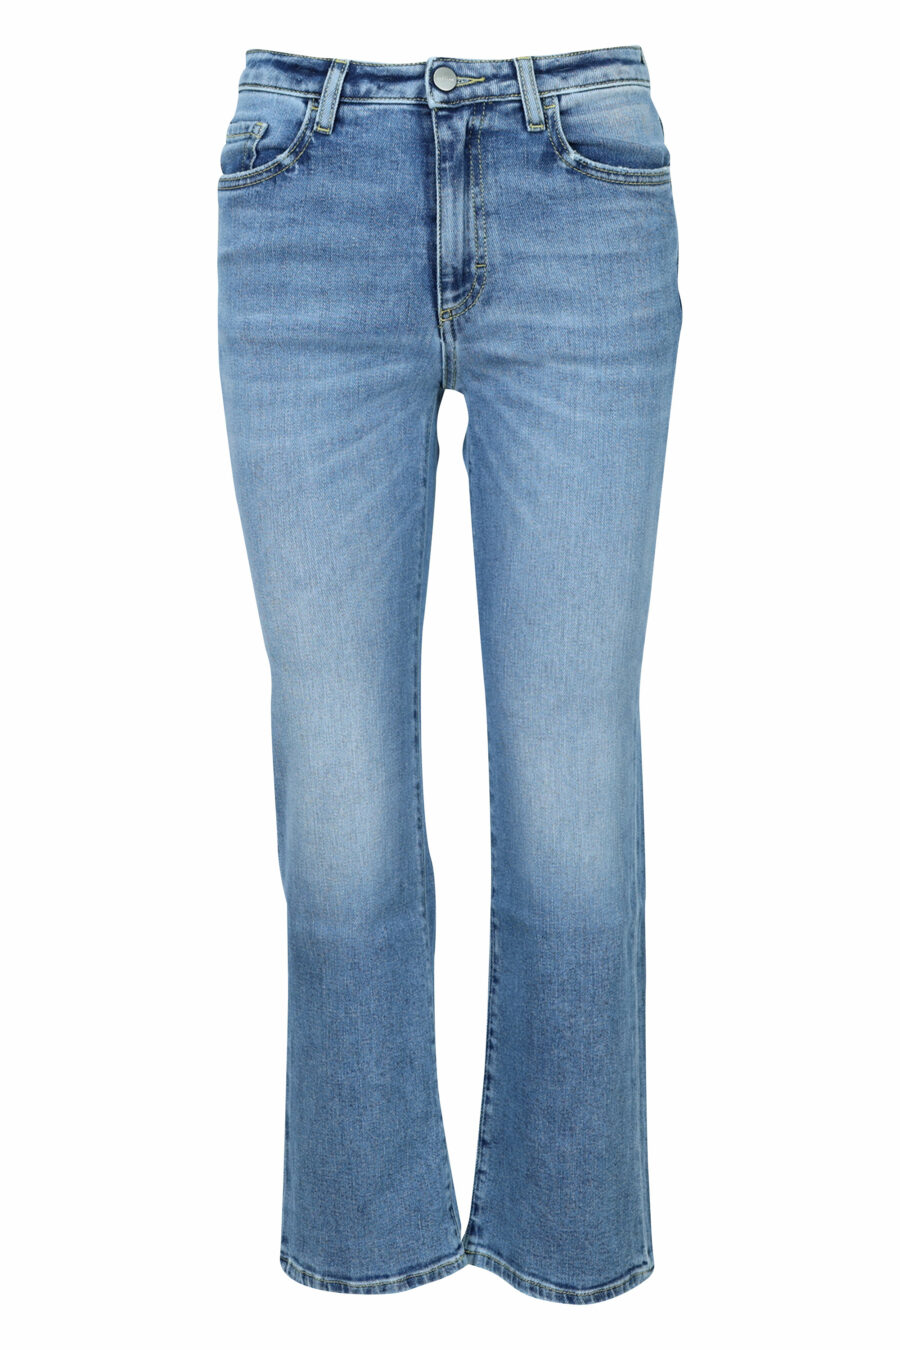 Pantalón vaquero azul lavado "Pam" con bota ancha - 8059772788069